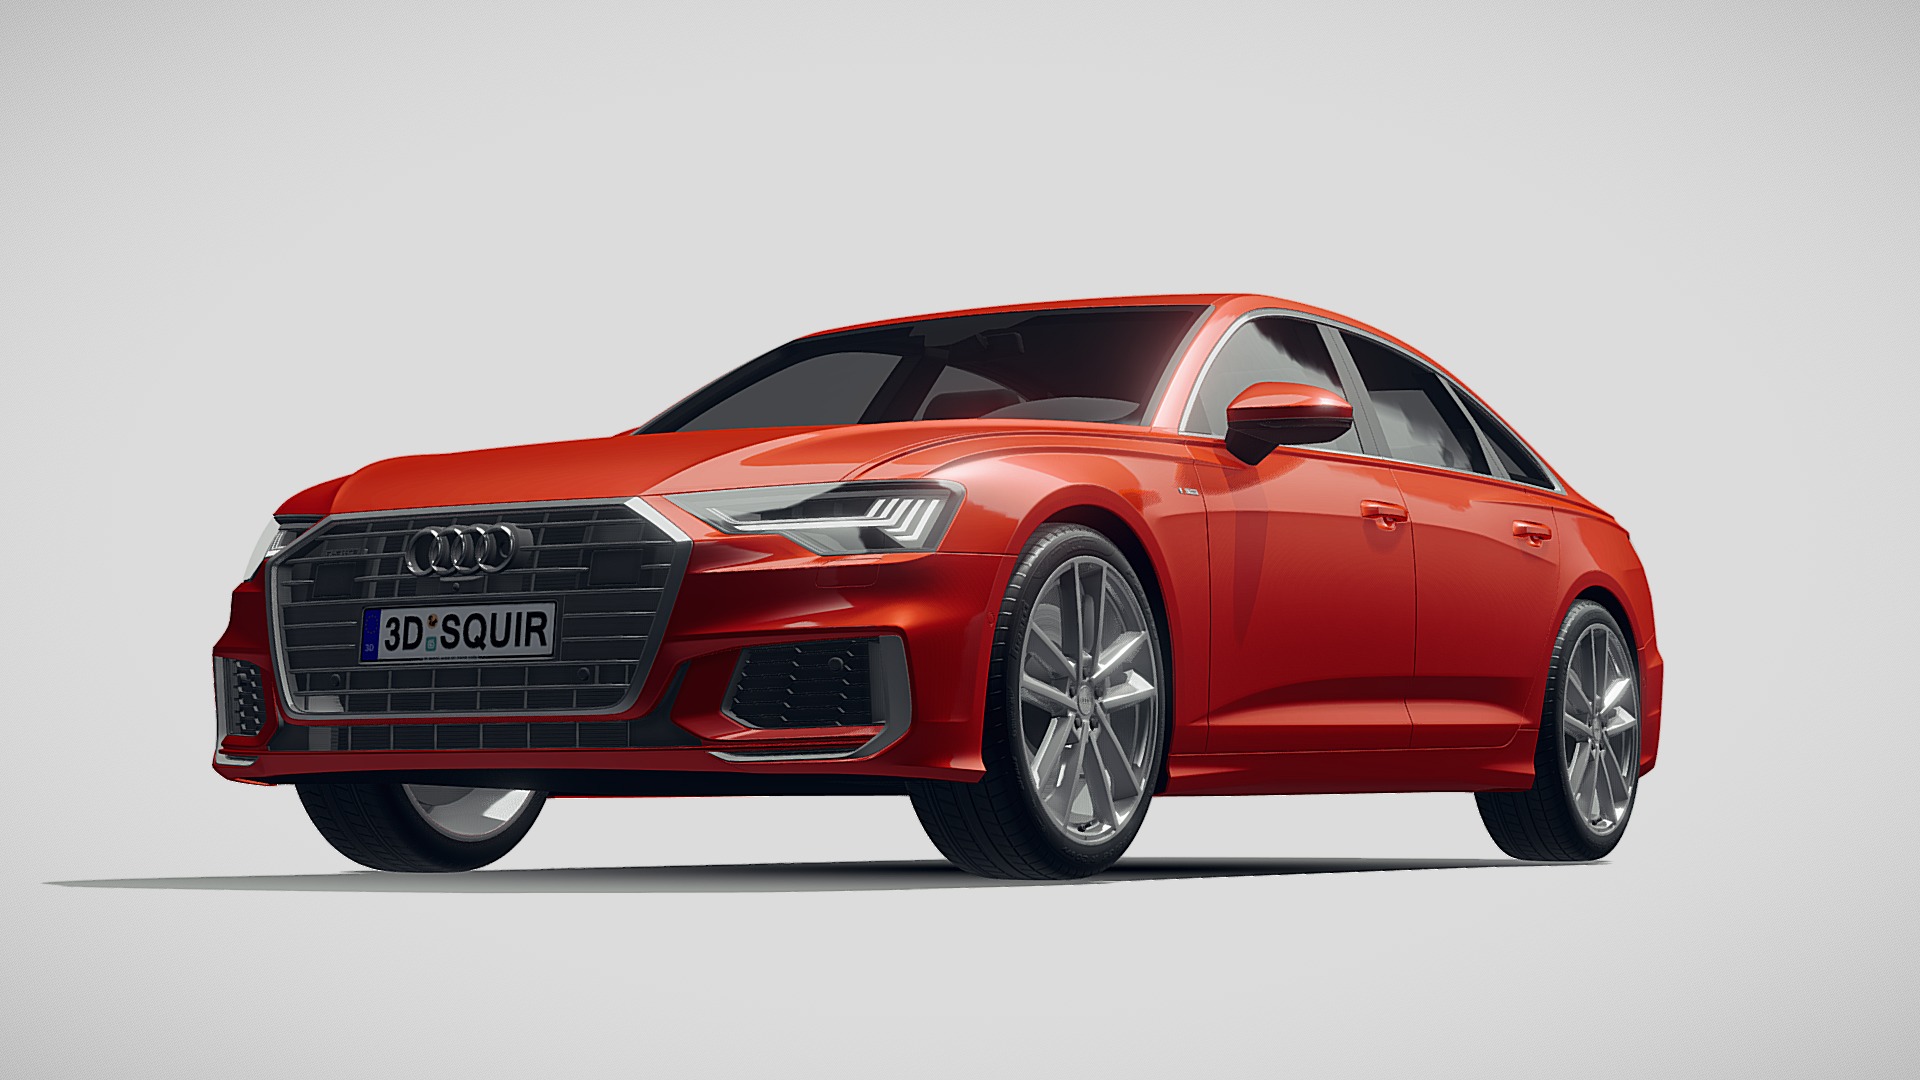 3D model Audi A6 S-Line 2019 - This is a 3D model of the Audi A6 S-Line 2019. The 3D model is about a red sports car.